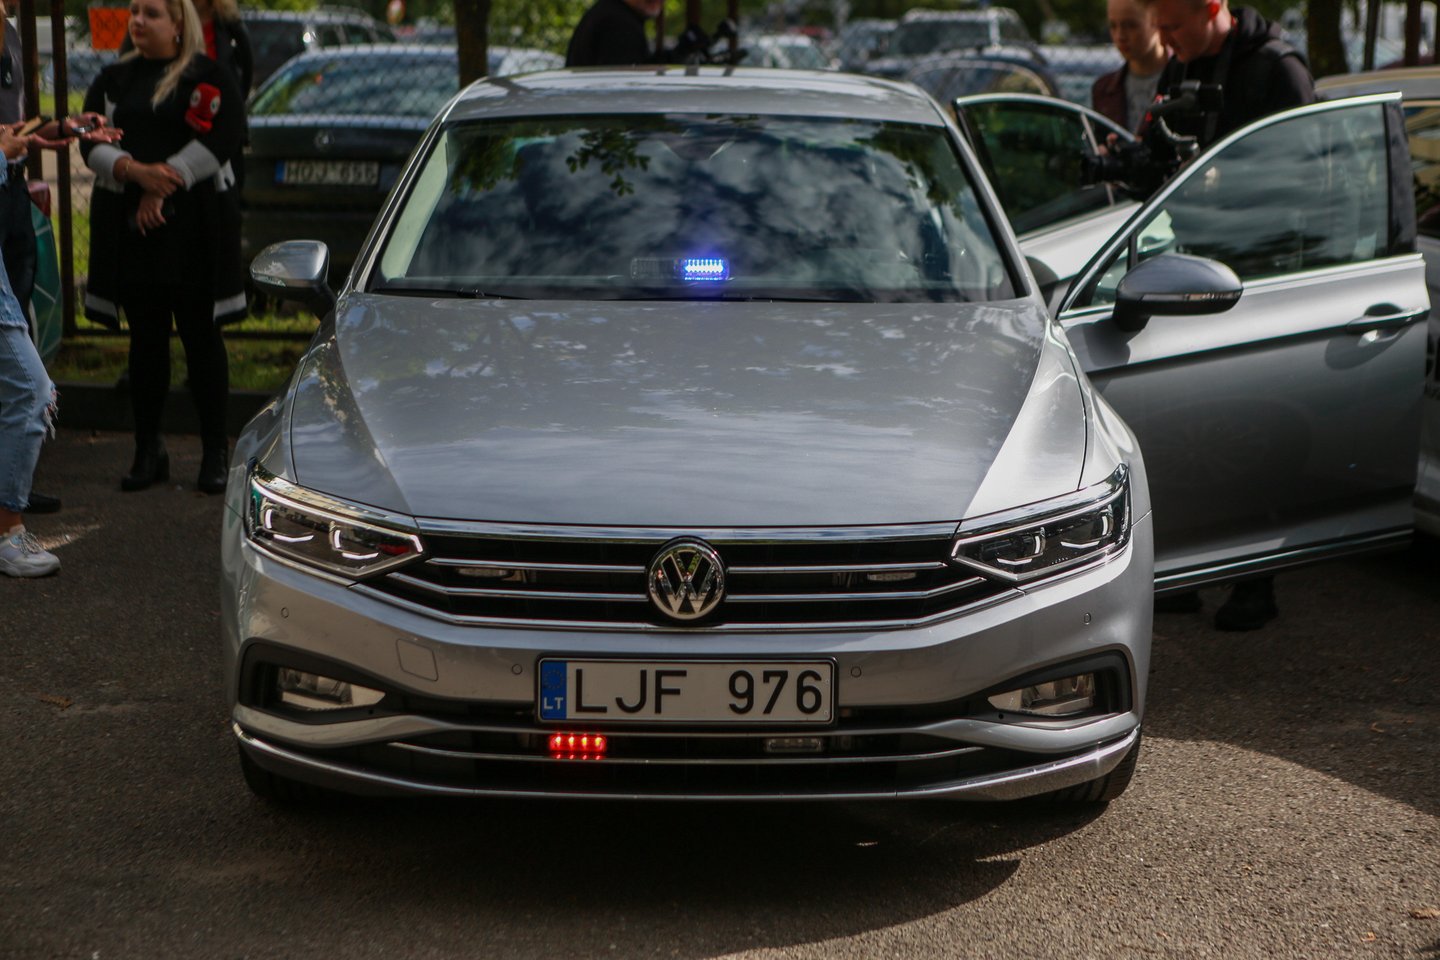 Ne vienas vairuotojas skundžiasi Lietuvos policijos naudojamais mobiliais trikojais greičio matuokliais arba nežymėtais policijos automobiliais.<br>G.Bitvinsko nuotr.